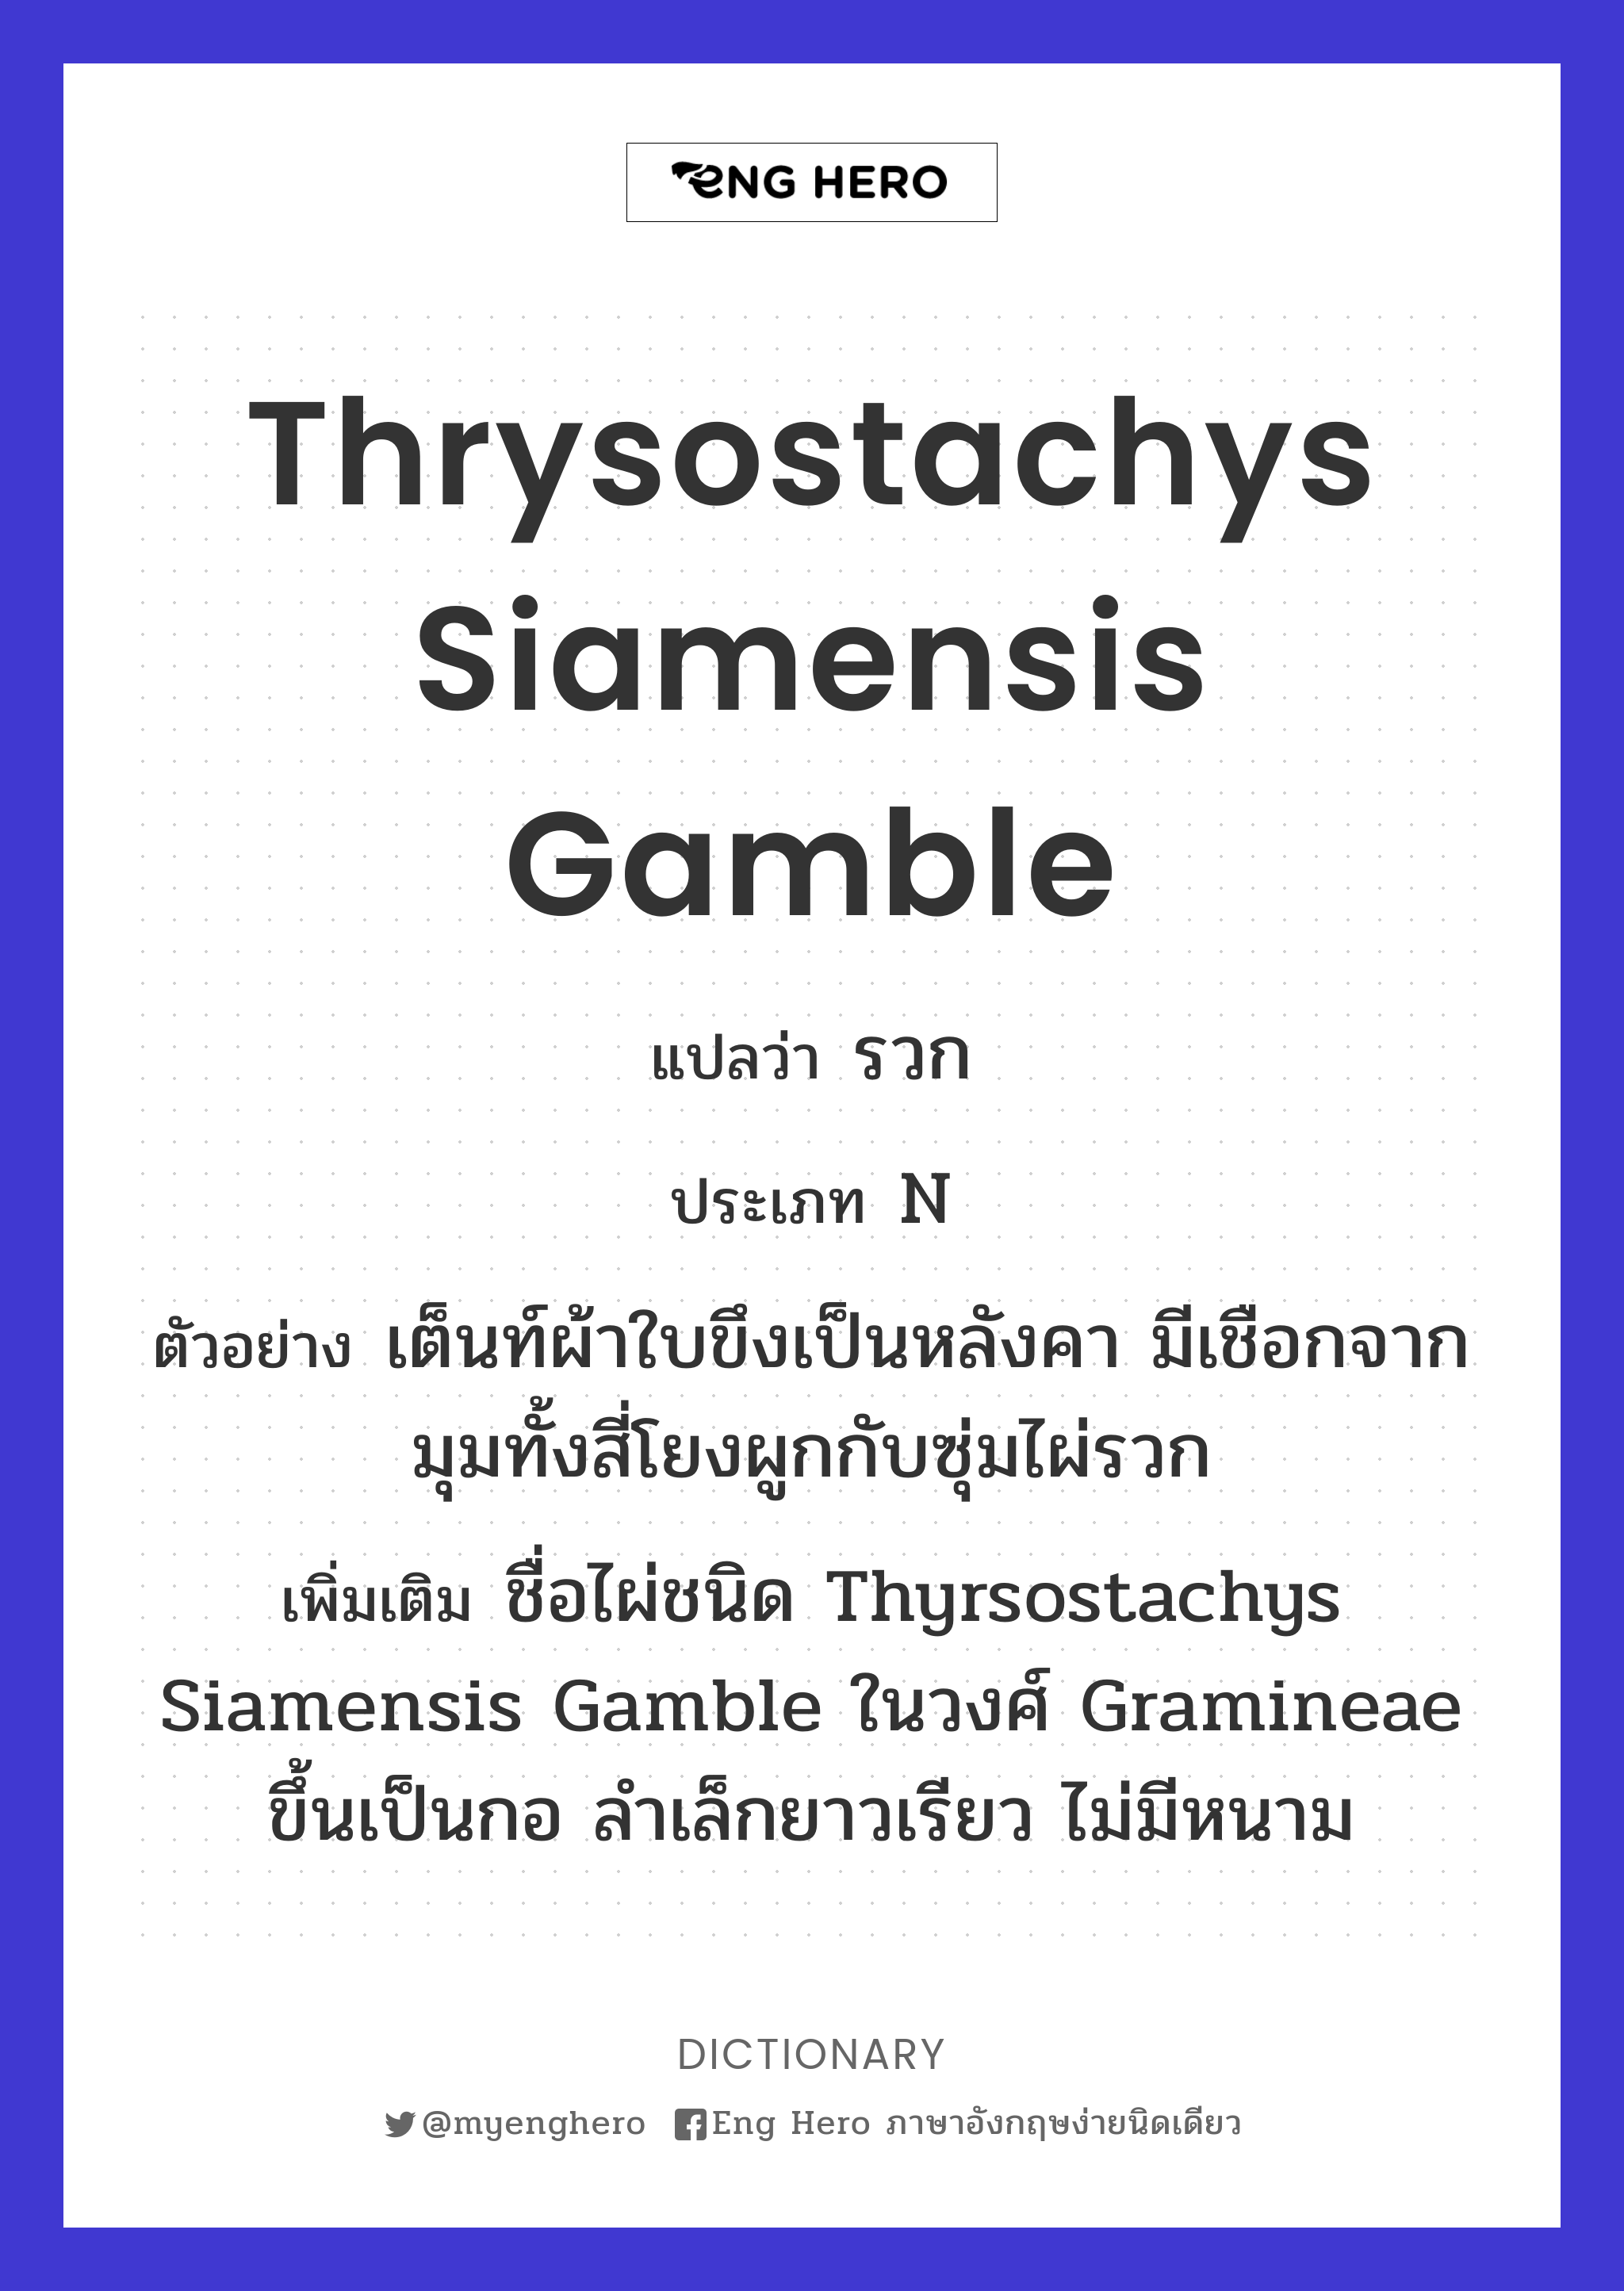 Thrysostachys siamensis Gamble